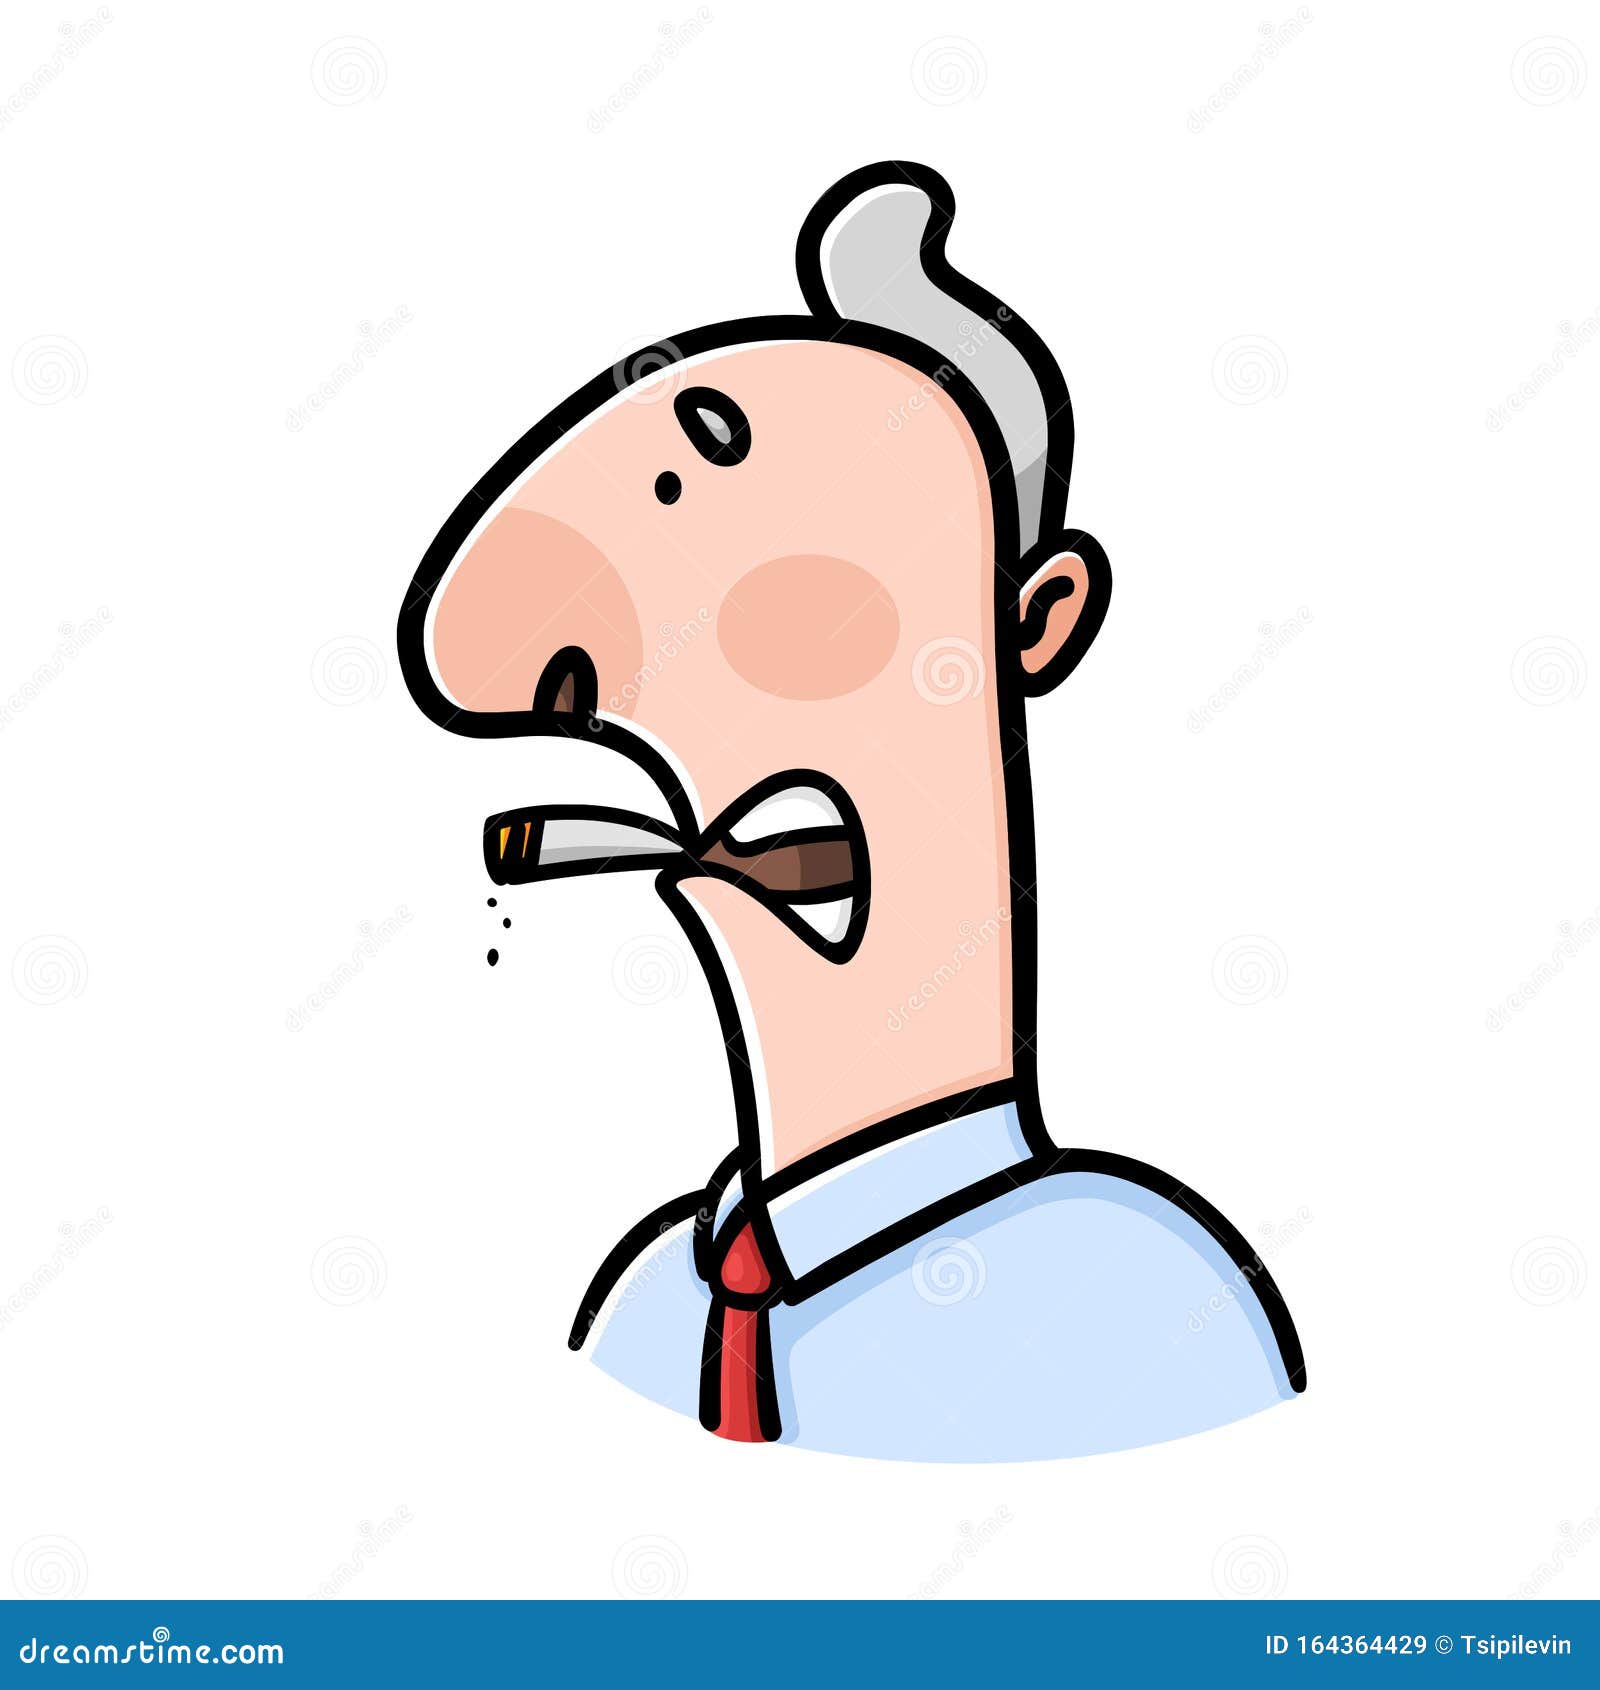 Smoking Man Cartoon on White Background Stock Illustration - Illustration  of isolated, smoking: 164364429